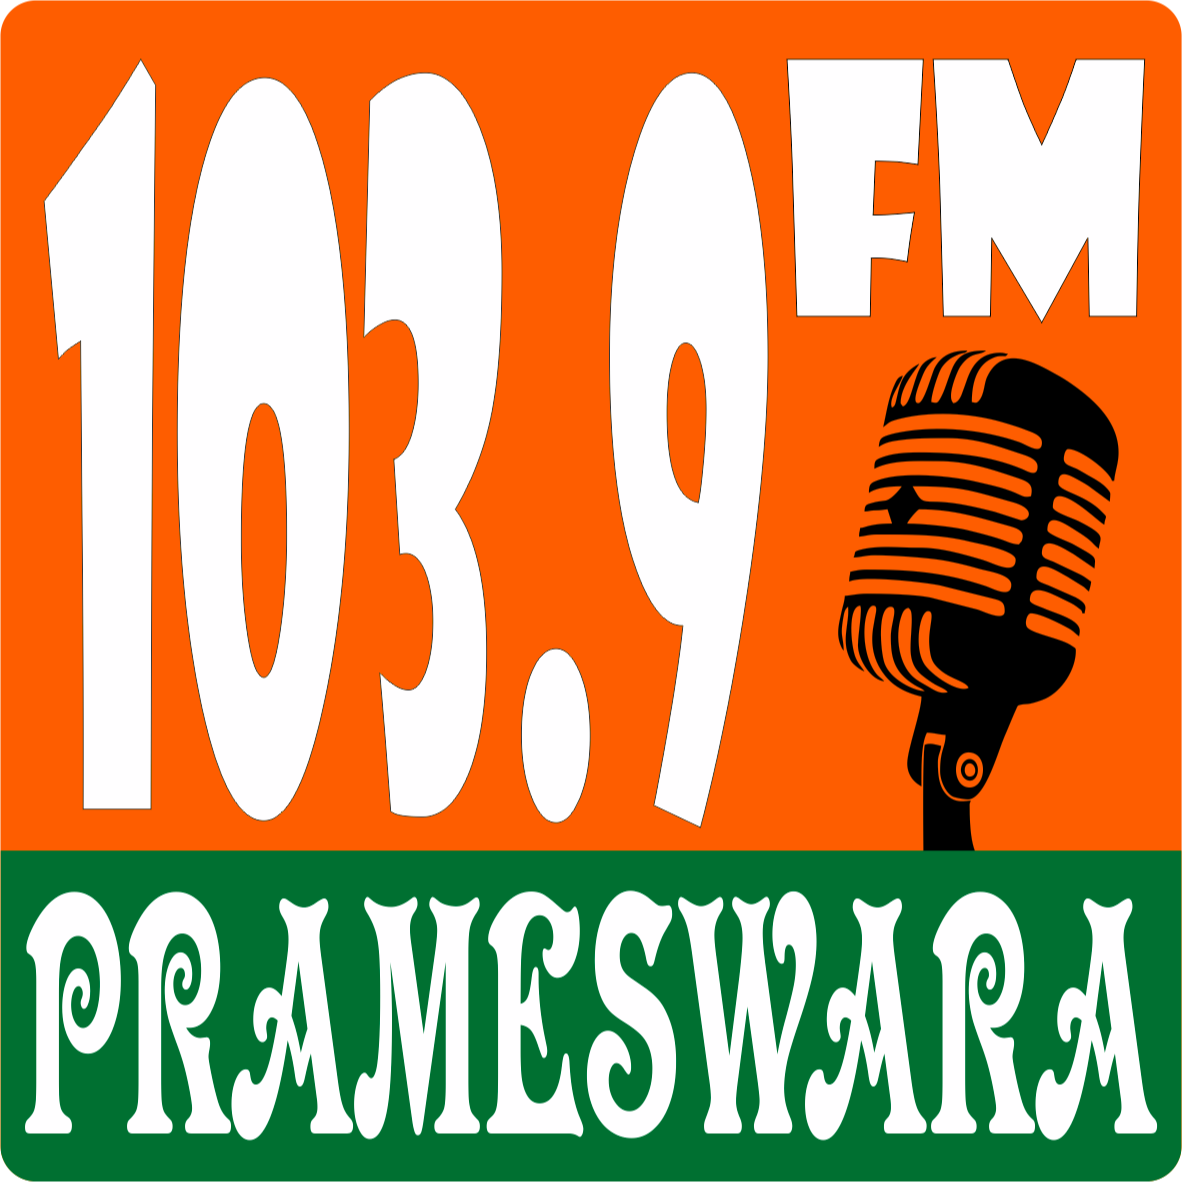 Prameswara